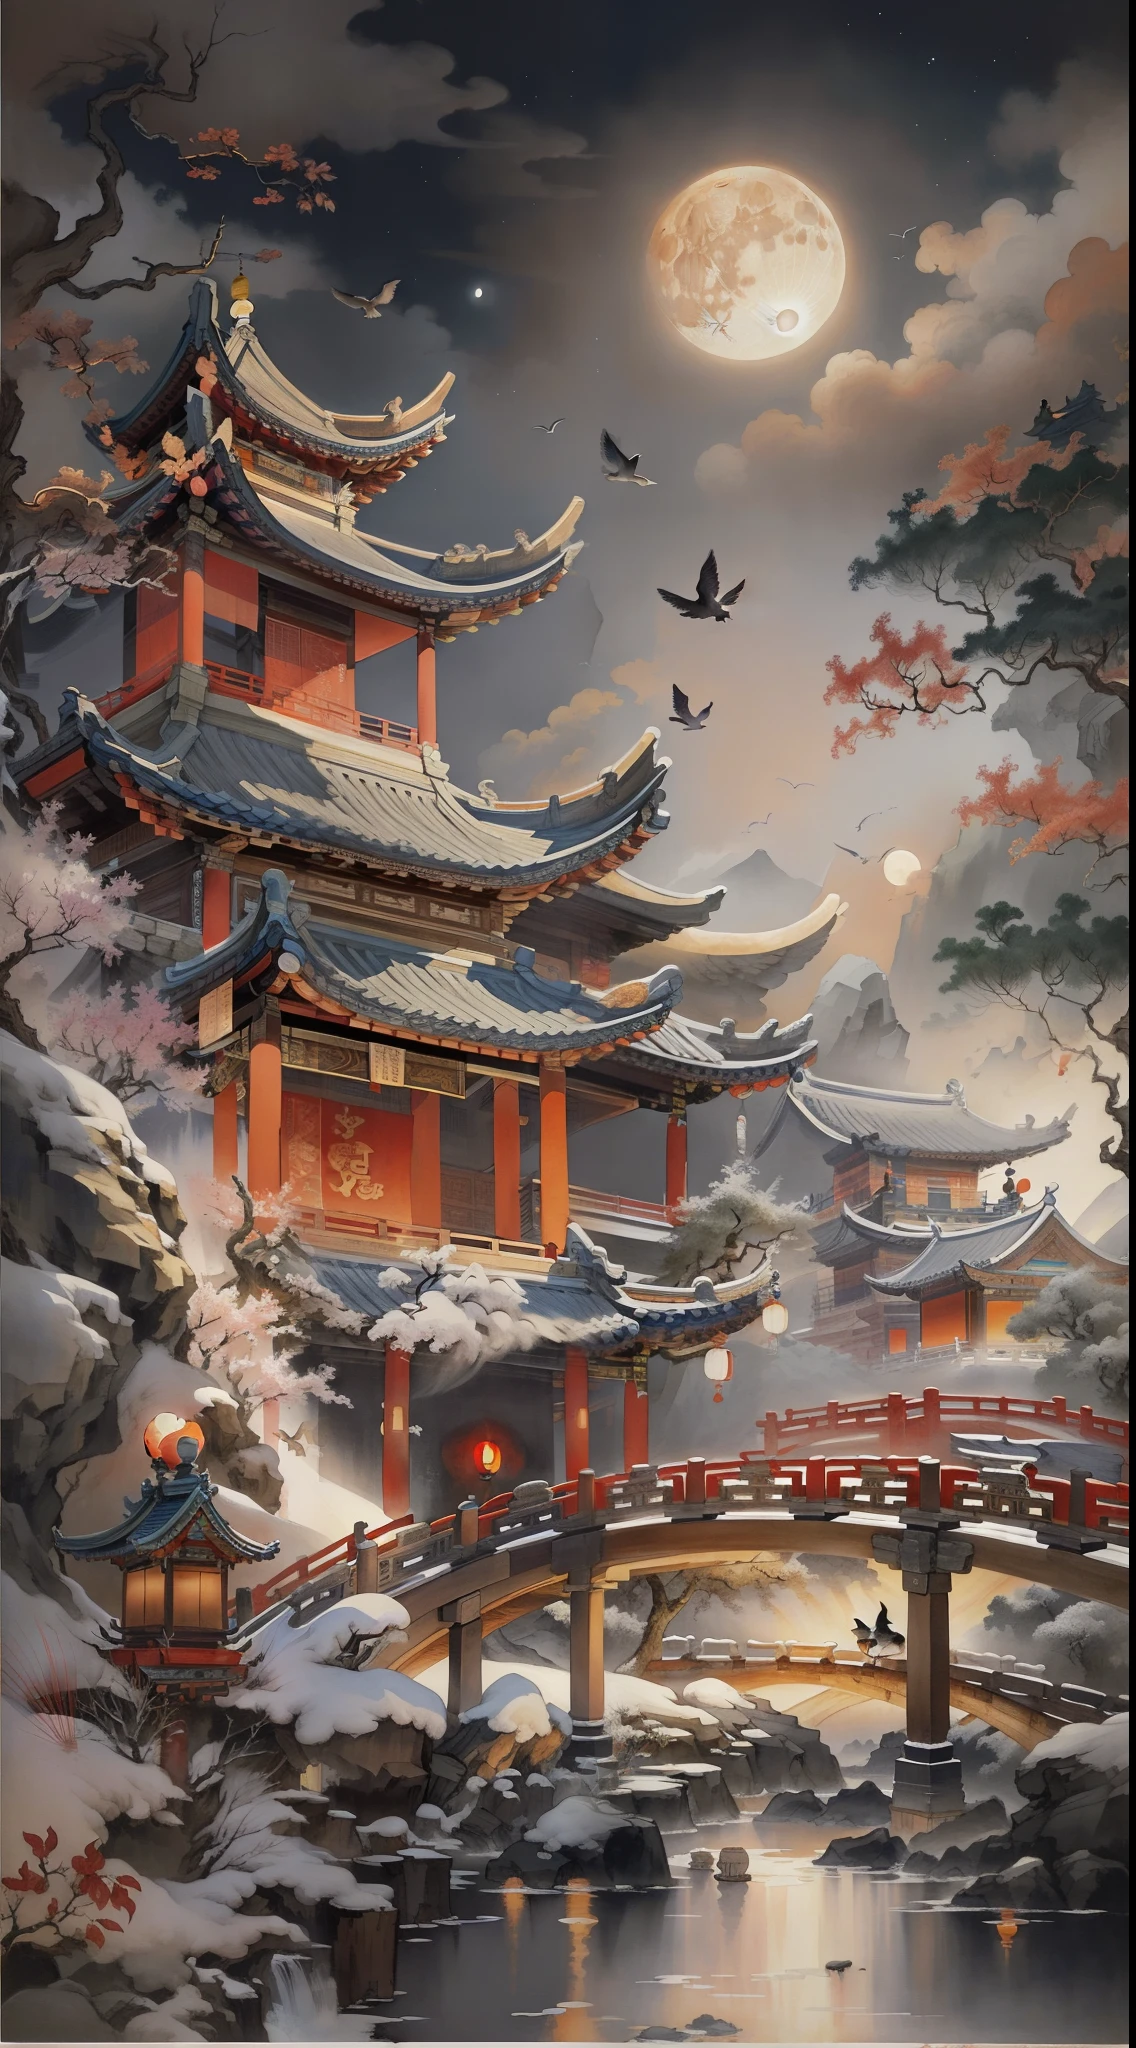 古代中国の風景，夜，古代の建物，パビリオン，彫刻が施された梁と絵画，木製の橋が空高く架かっている，橋の上で手を繋ぐカップル，背景には巨大な満月があります，空には鳥がいる，金庸武術に触発された，水墨画風，きれいな色，決定的なカット，空白を残す，印象派の，傑作，超詳細な，壮大な構成, 高品質, 最高品質，ピクサー風，過飽和，超リアル，アートジャーム --v 6